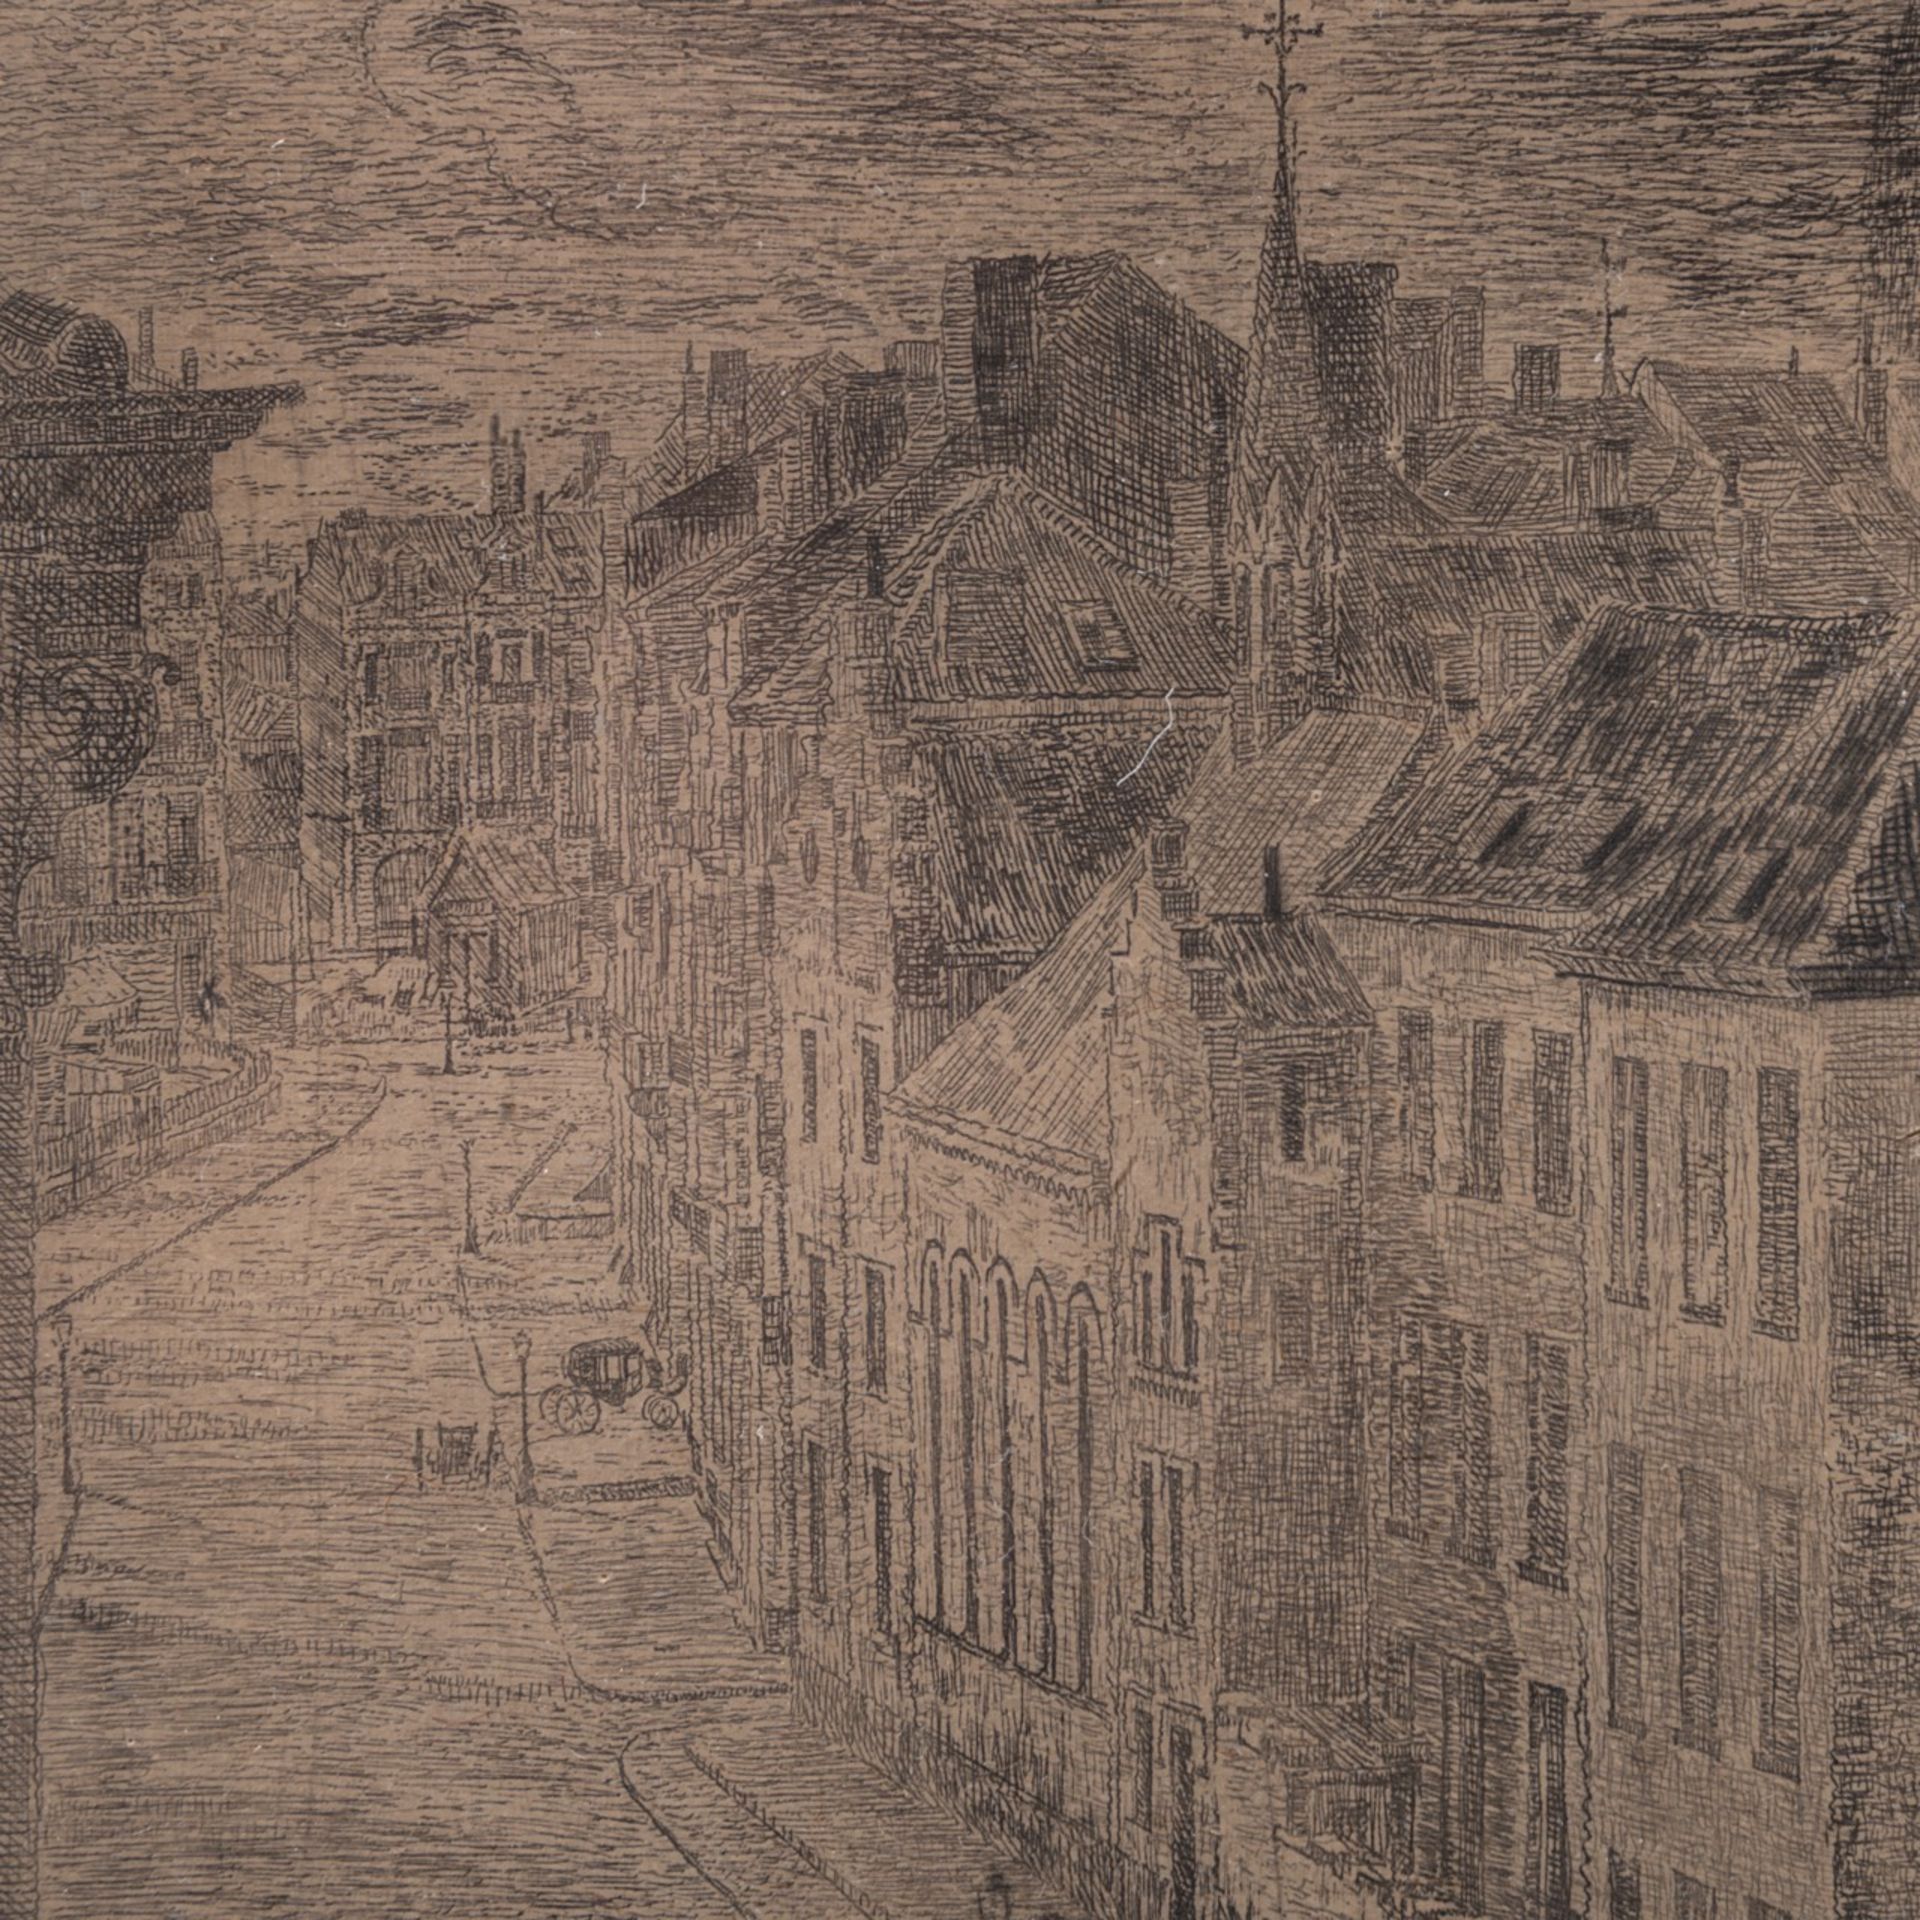 James Ensor (1860-1949), 'Van Iseghem Boulevard te Oostende' (1889), etching and drypoint on simili - Image 5 of 5